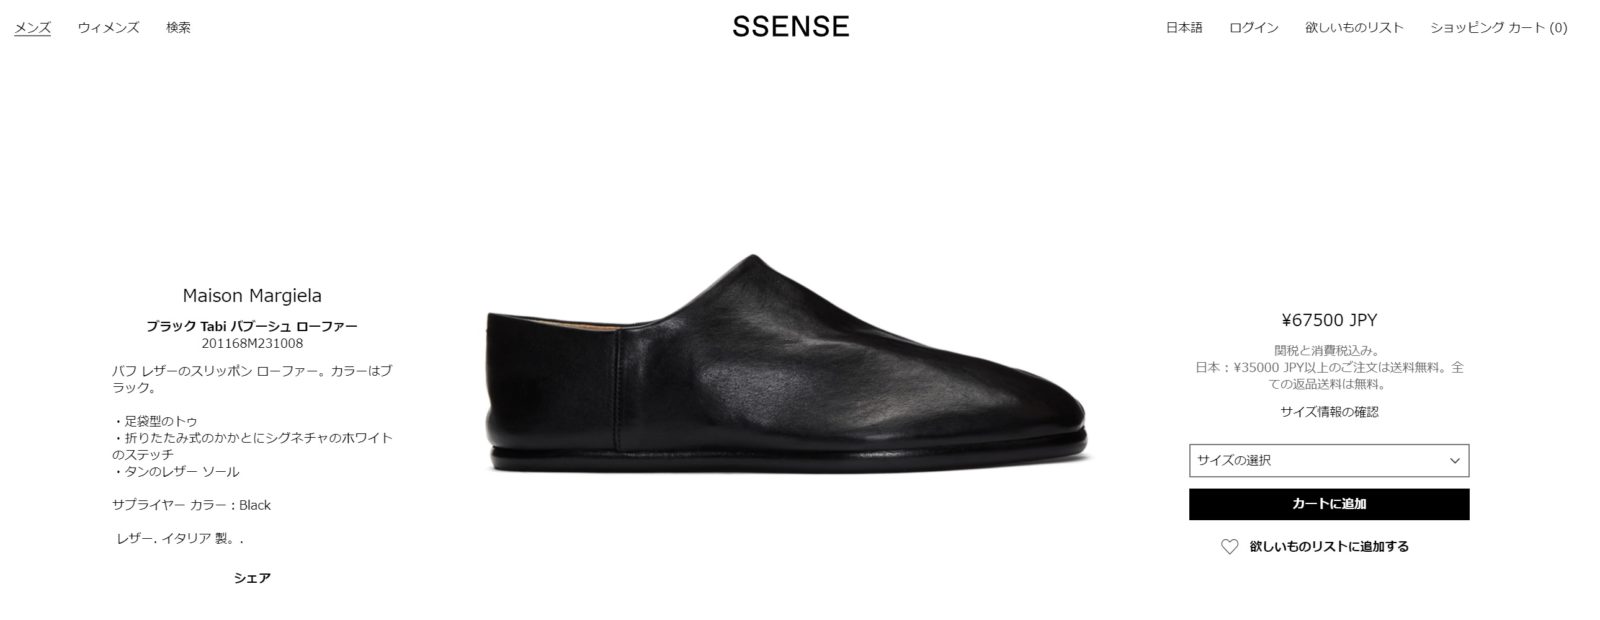 【マルジェラ】足袋ブーツのサイズ感と定価より4万安い通販サイト | 30代からのメンズファッションブログ